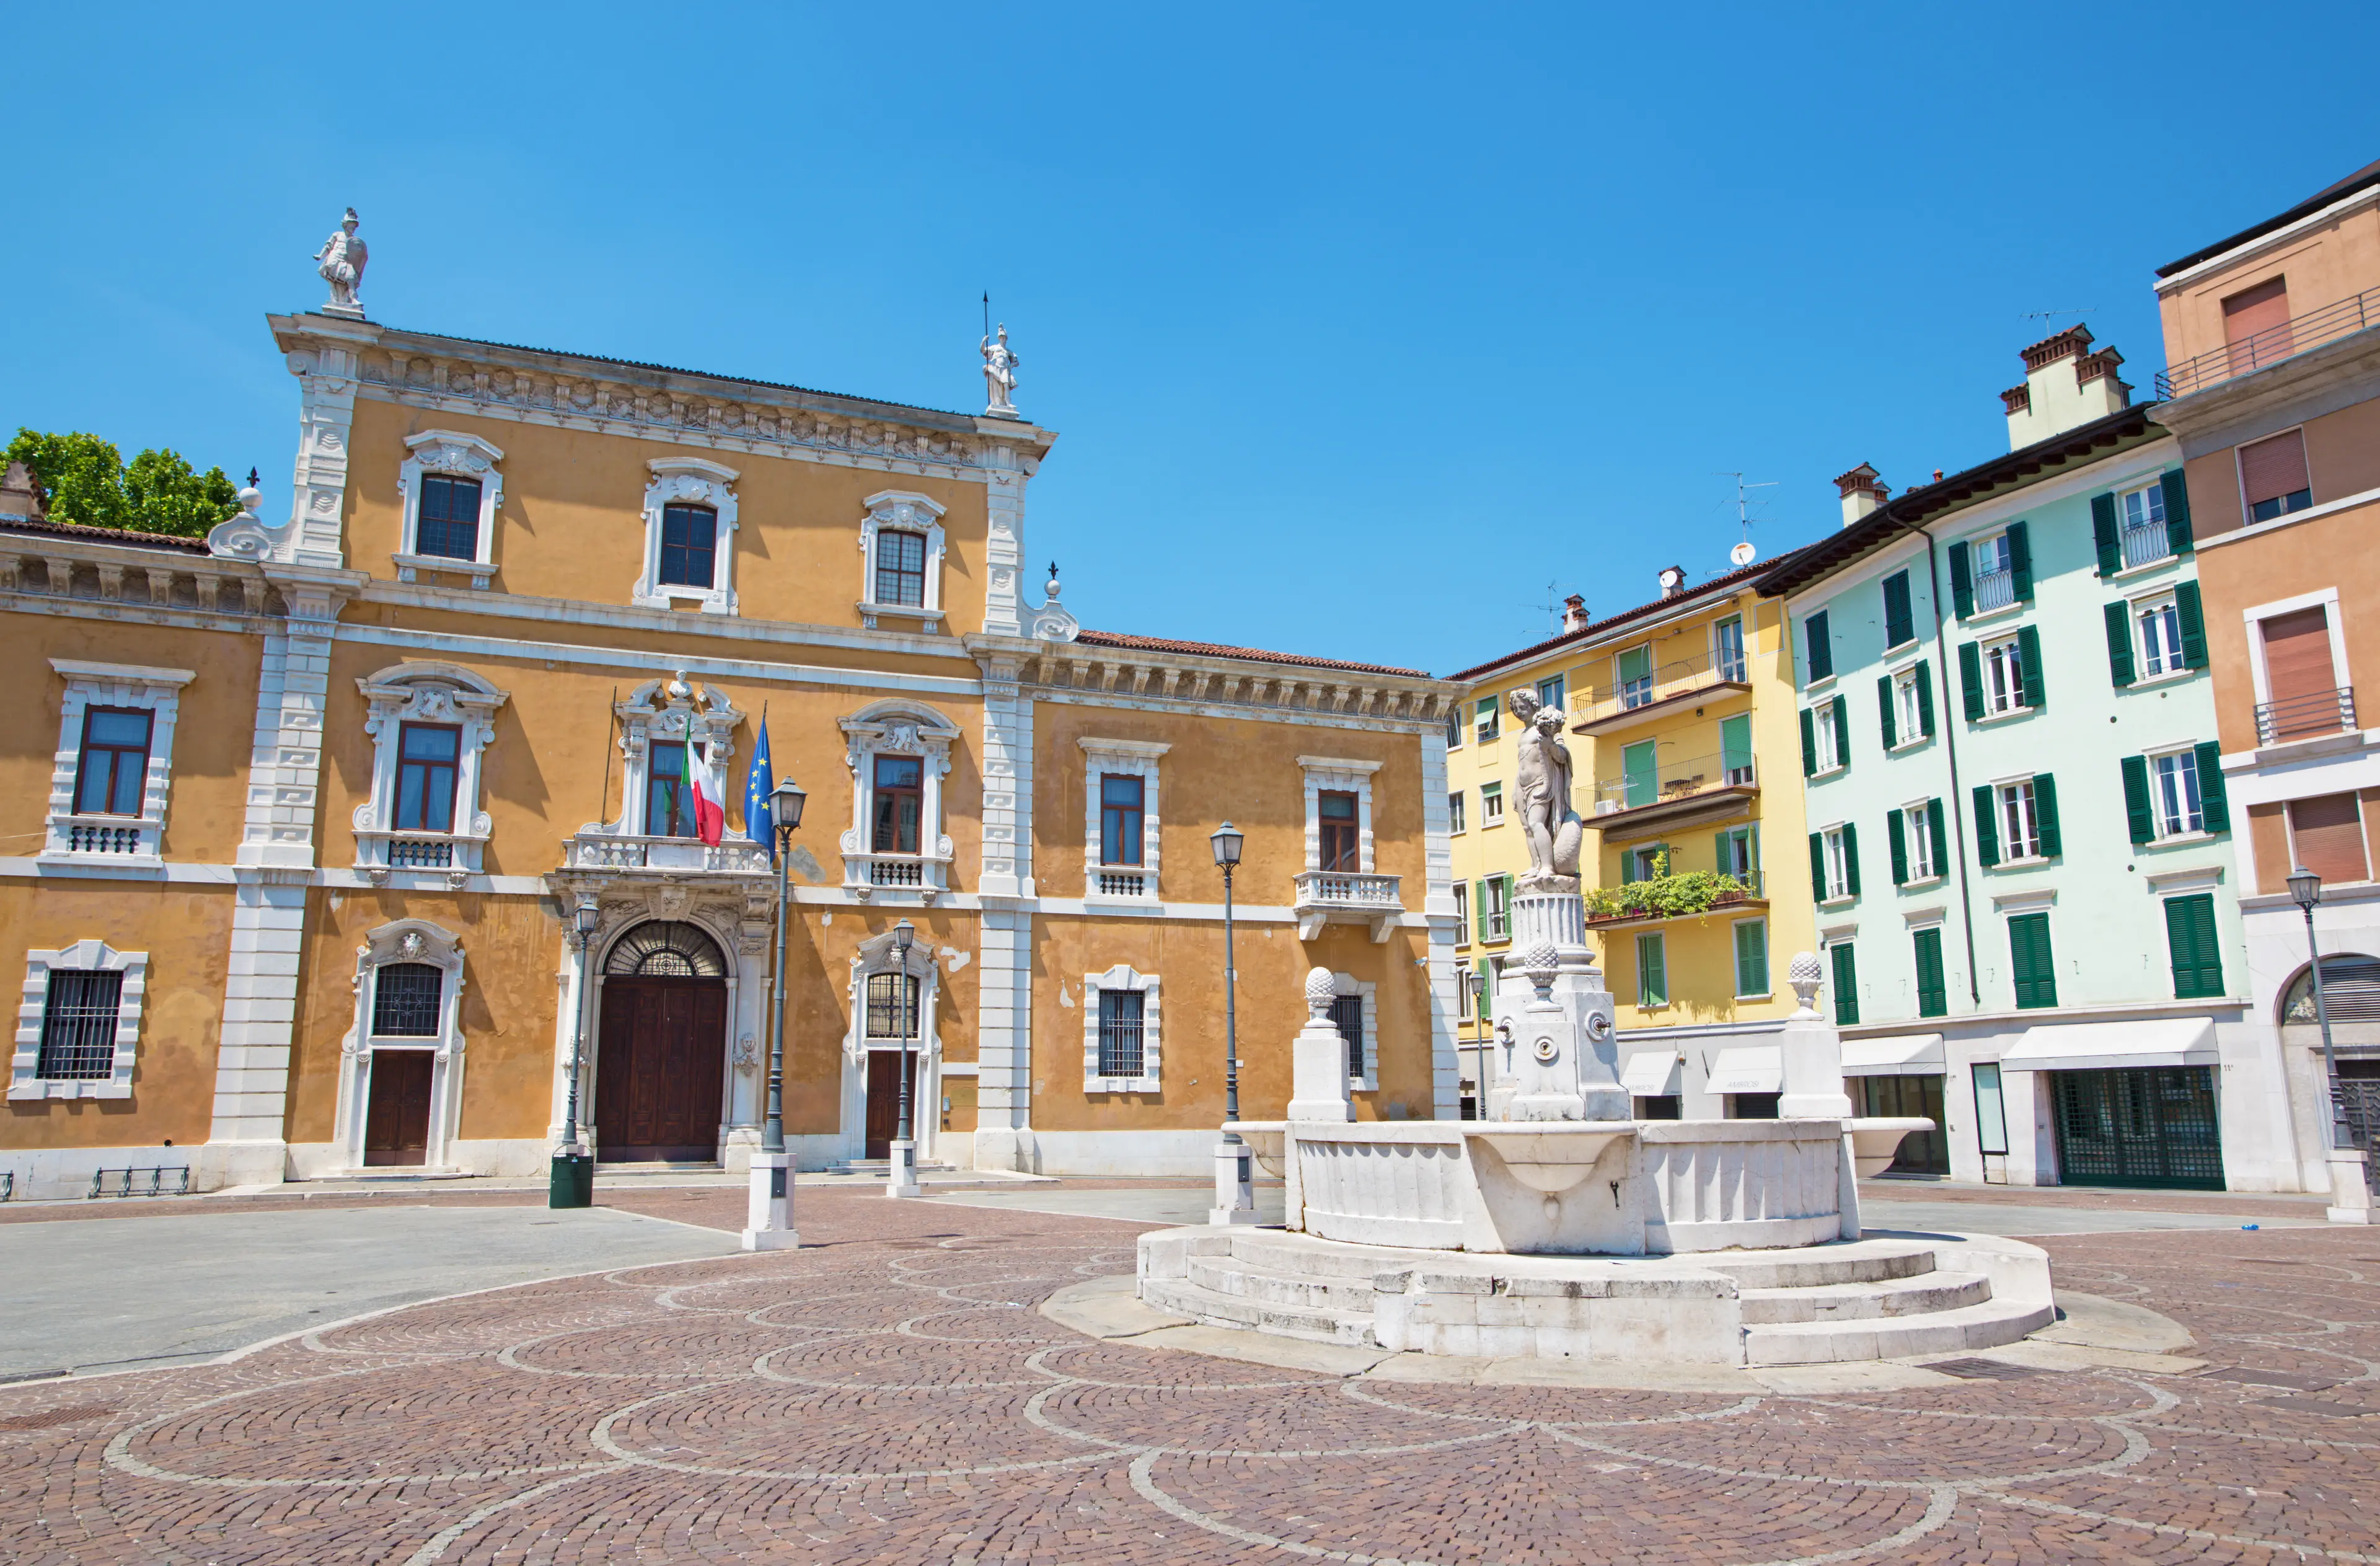 The Piazza del Mercato square and University of Brescia